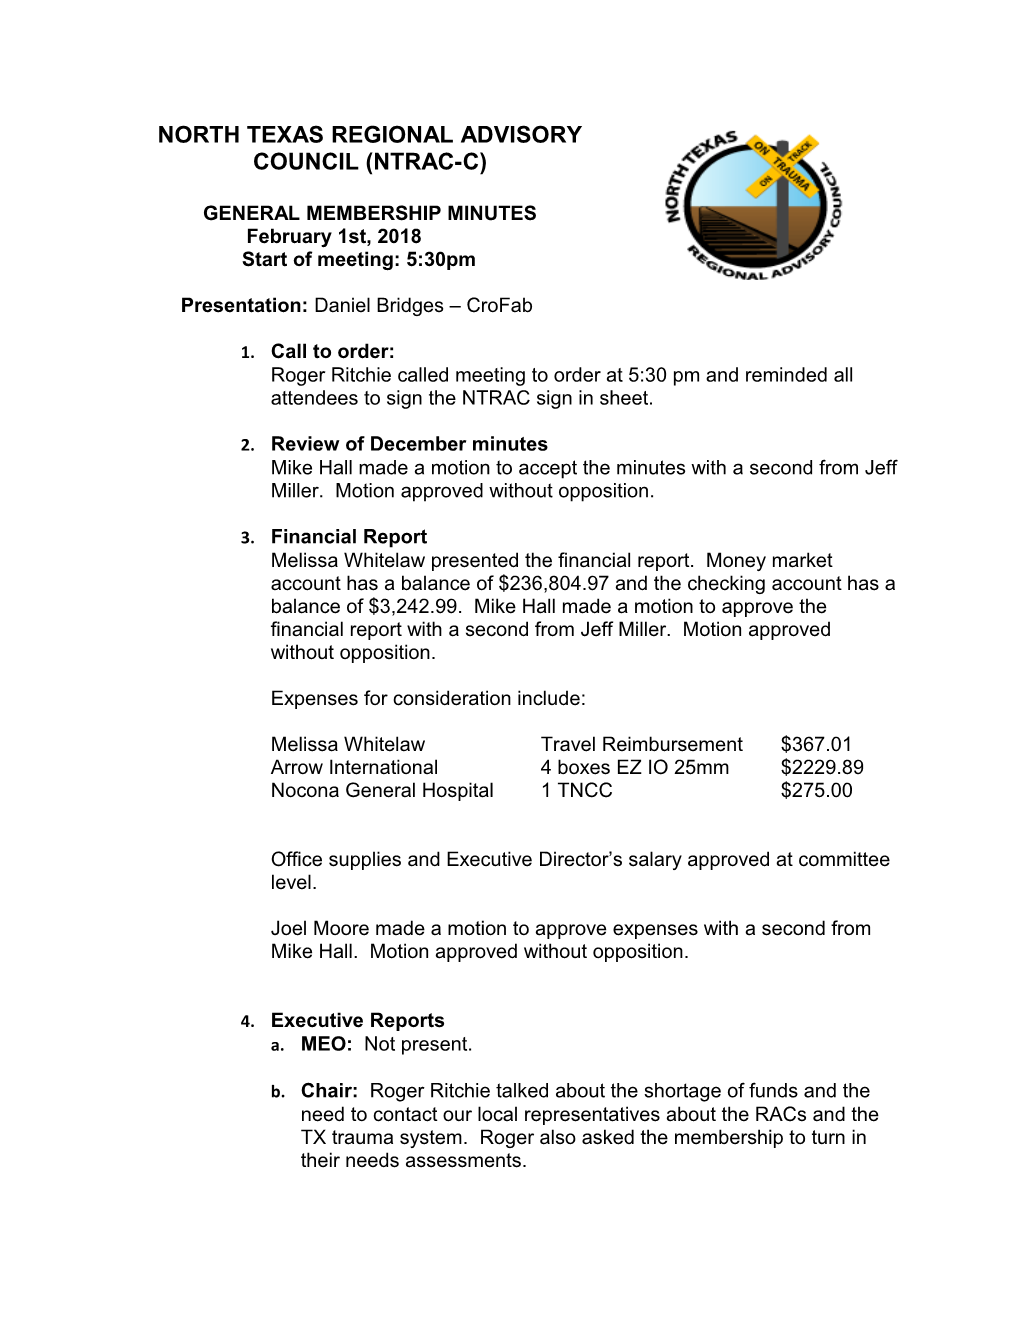 General Membership Minutes